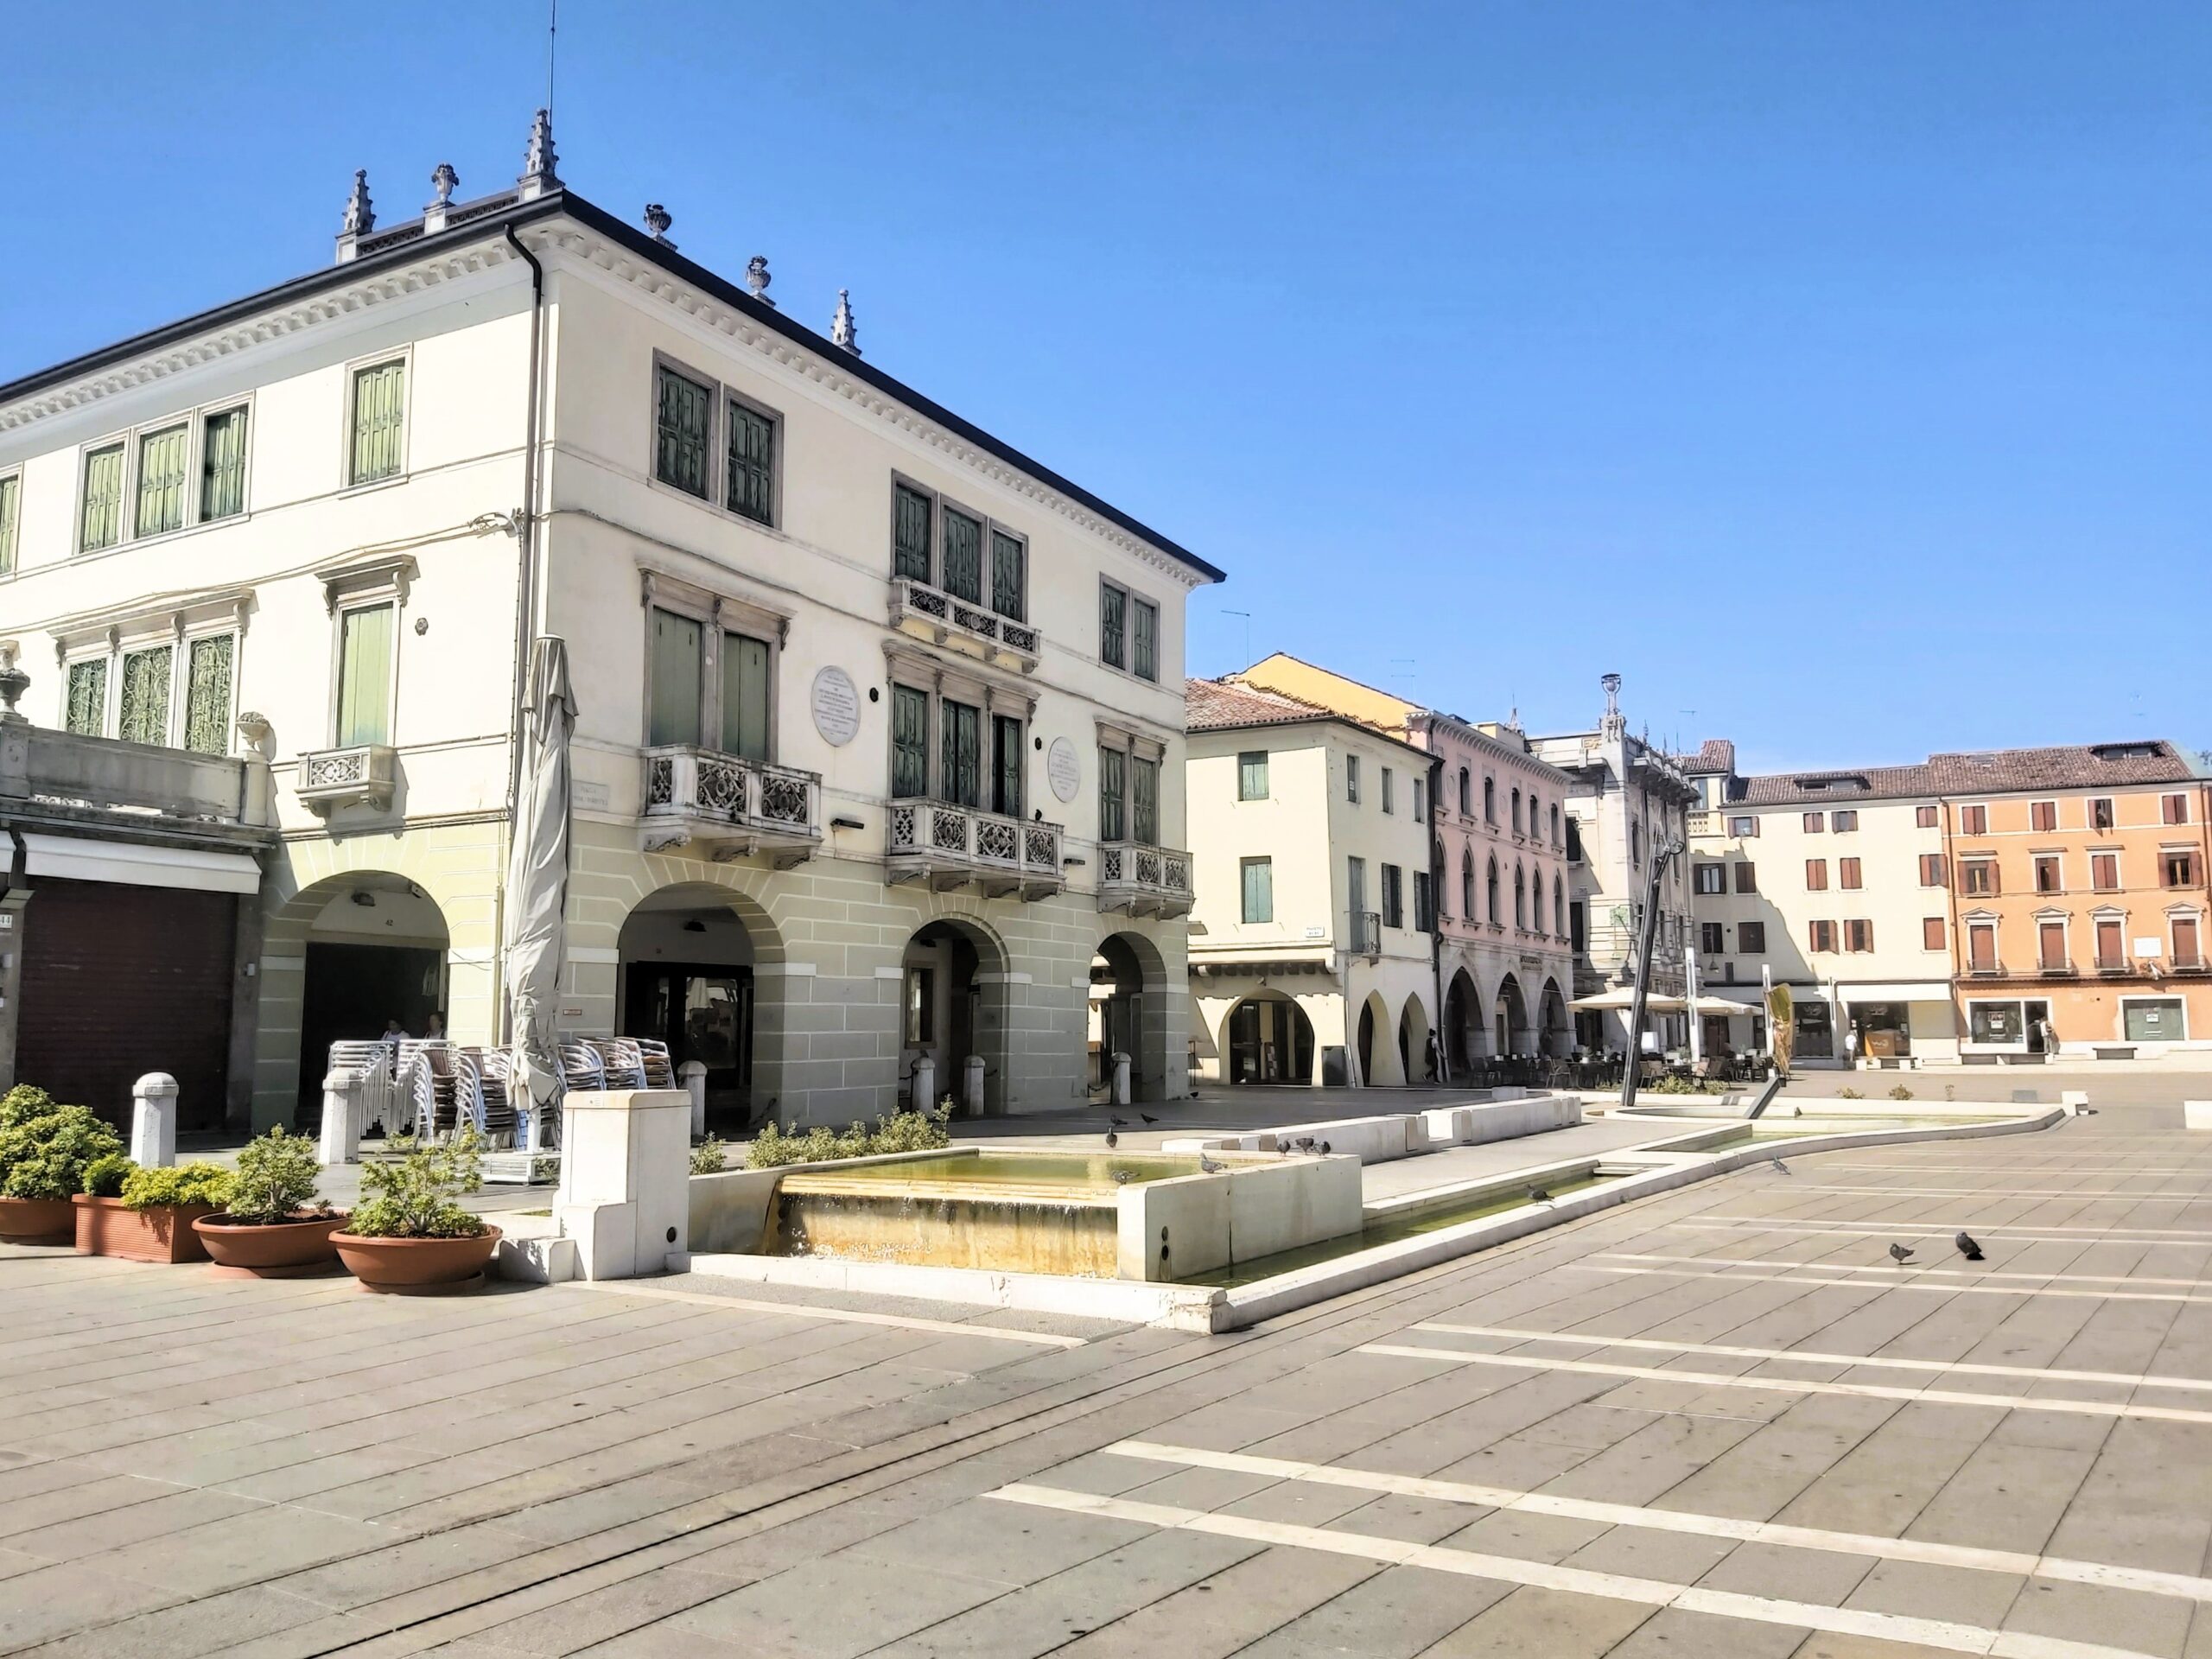 Piazza Ferretto (or Piazza Maggiore), in Mestre, Italy